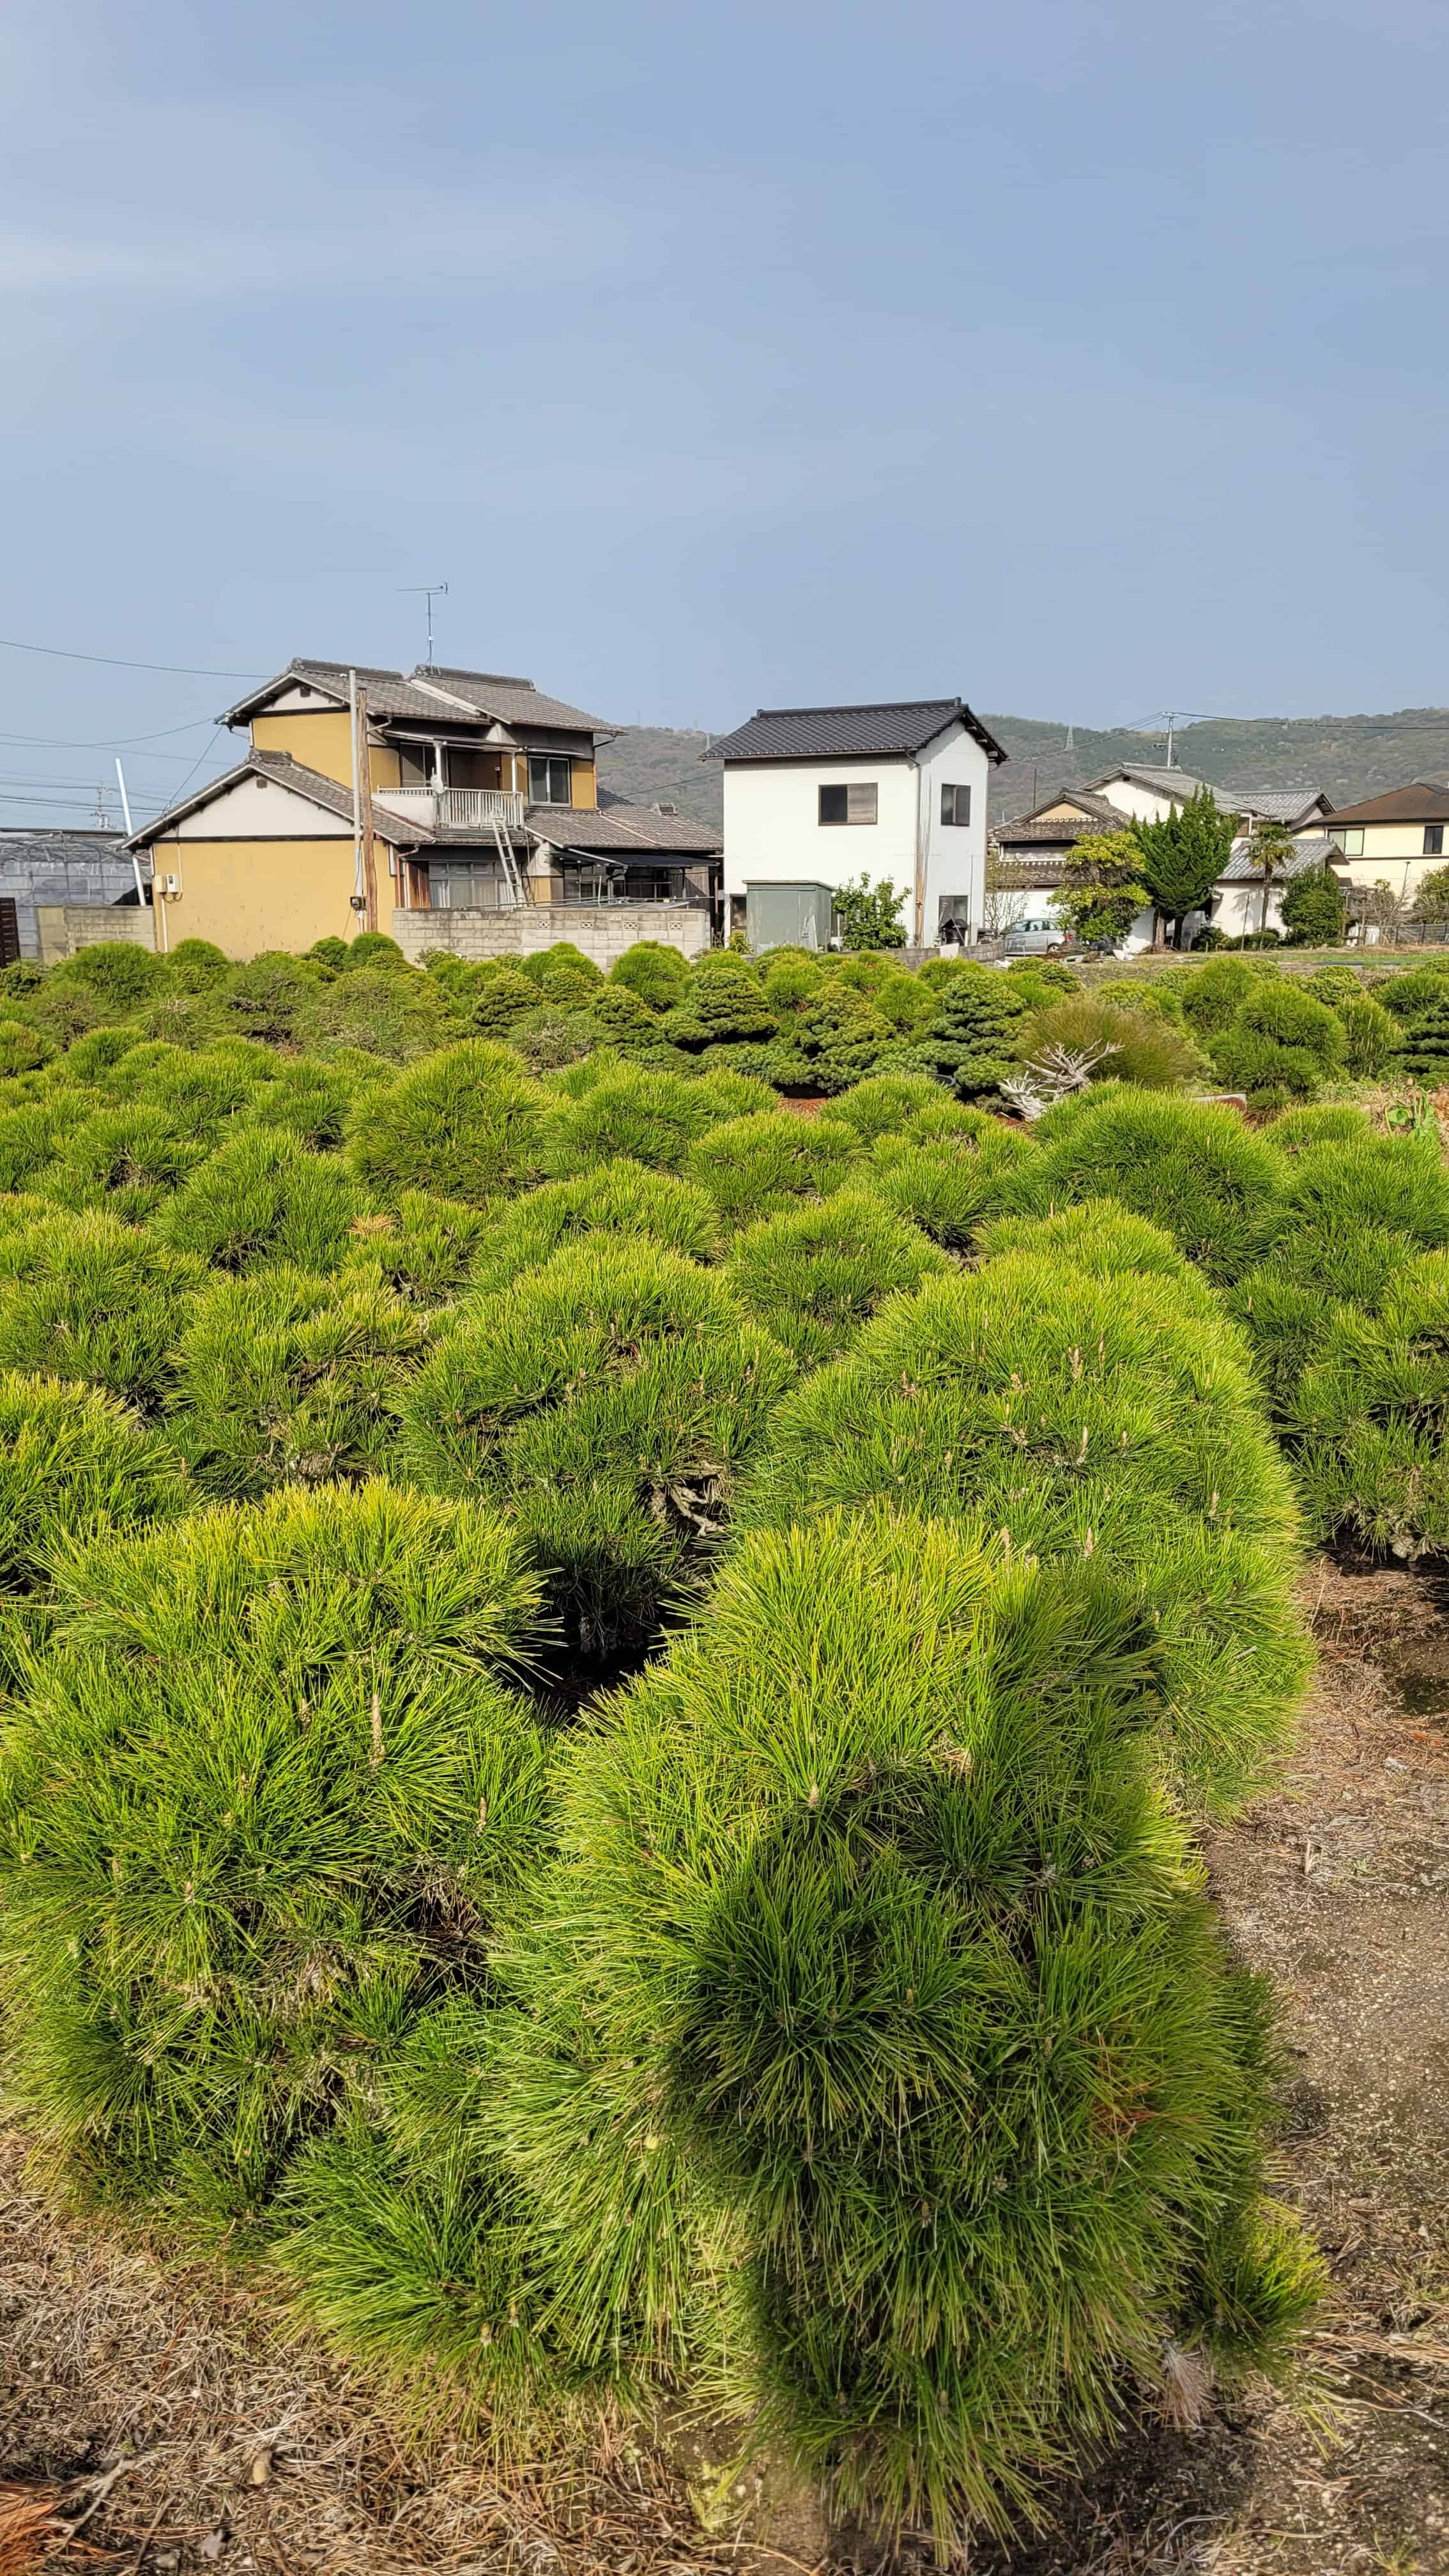 A growing bonsai tree from yoseien in Japan